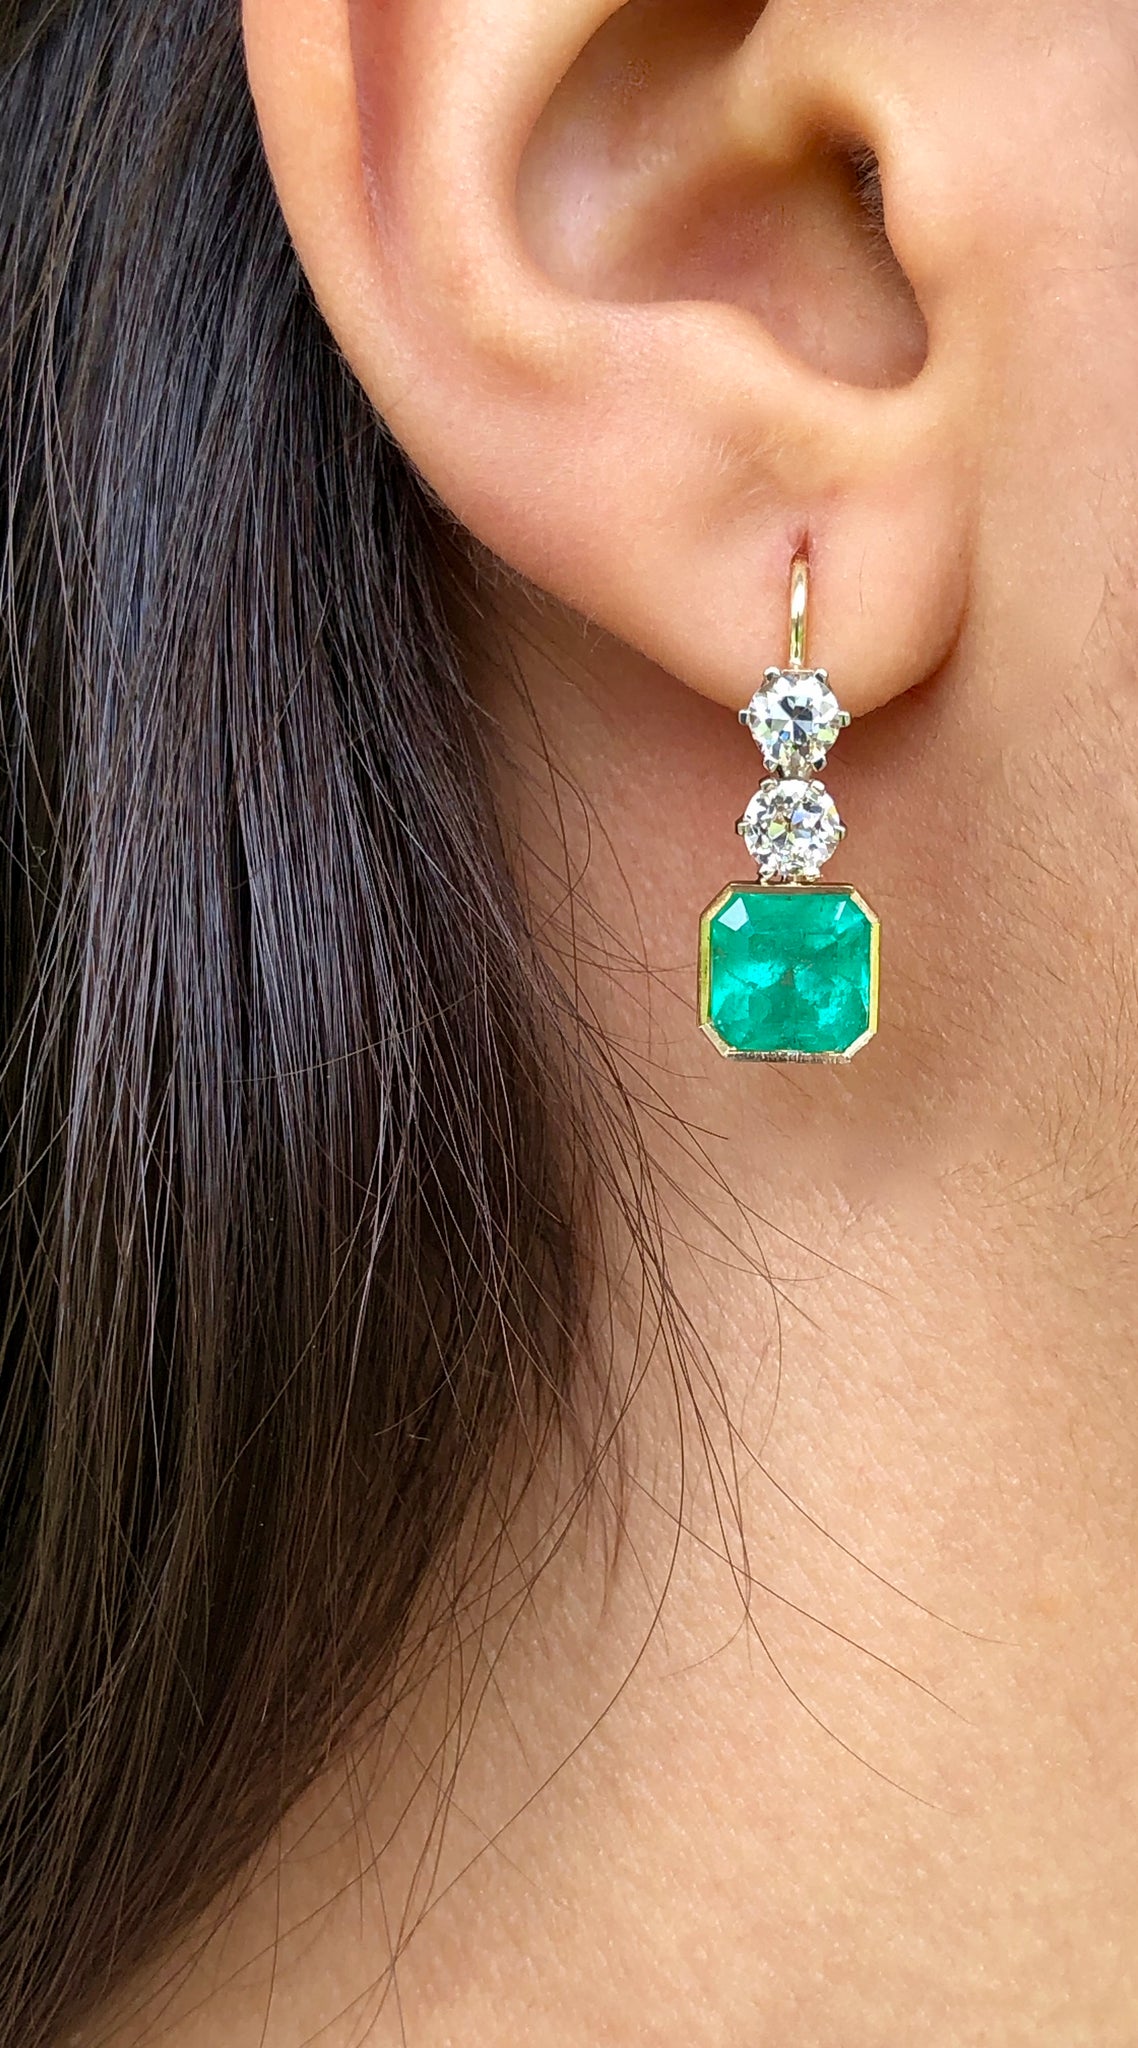 6.60 Carat Colombian Emerald & Old European Diamond Dangle Earrings